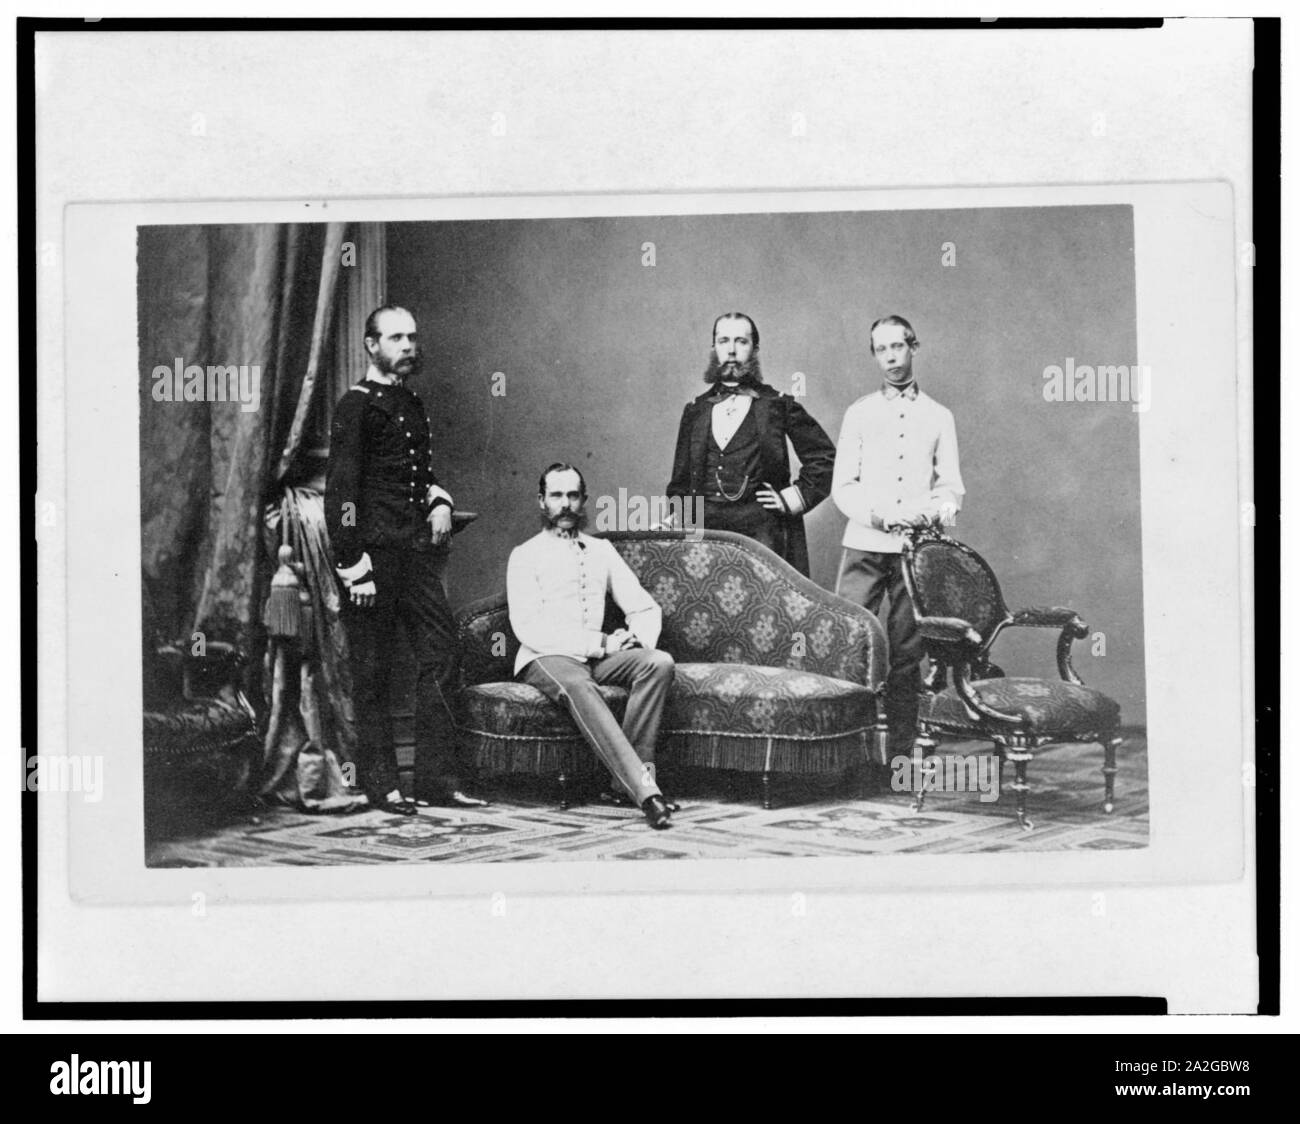 L'Imperatore Maximilian, (centro permanente con la mano sulla hip) e i suoi tre fratelli, (da sinistra a destra) Arciduca Karl Ludwig di Austria, l'Imperatore Franz Joseph I di Austria e Arciduca Ludwig Viktor Foto Stock